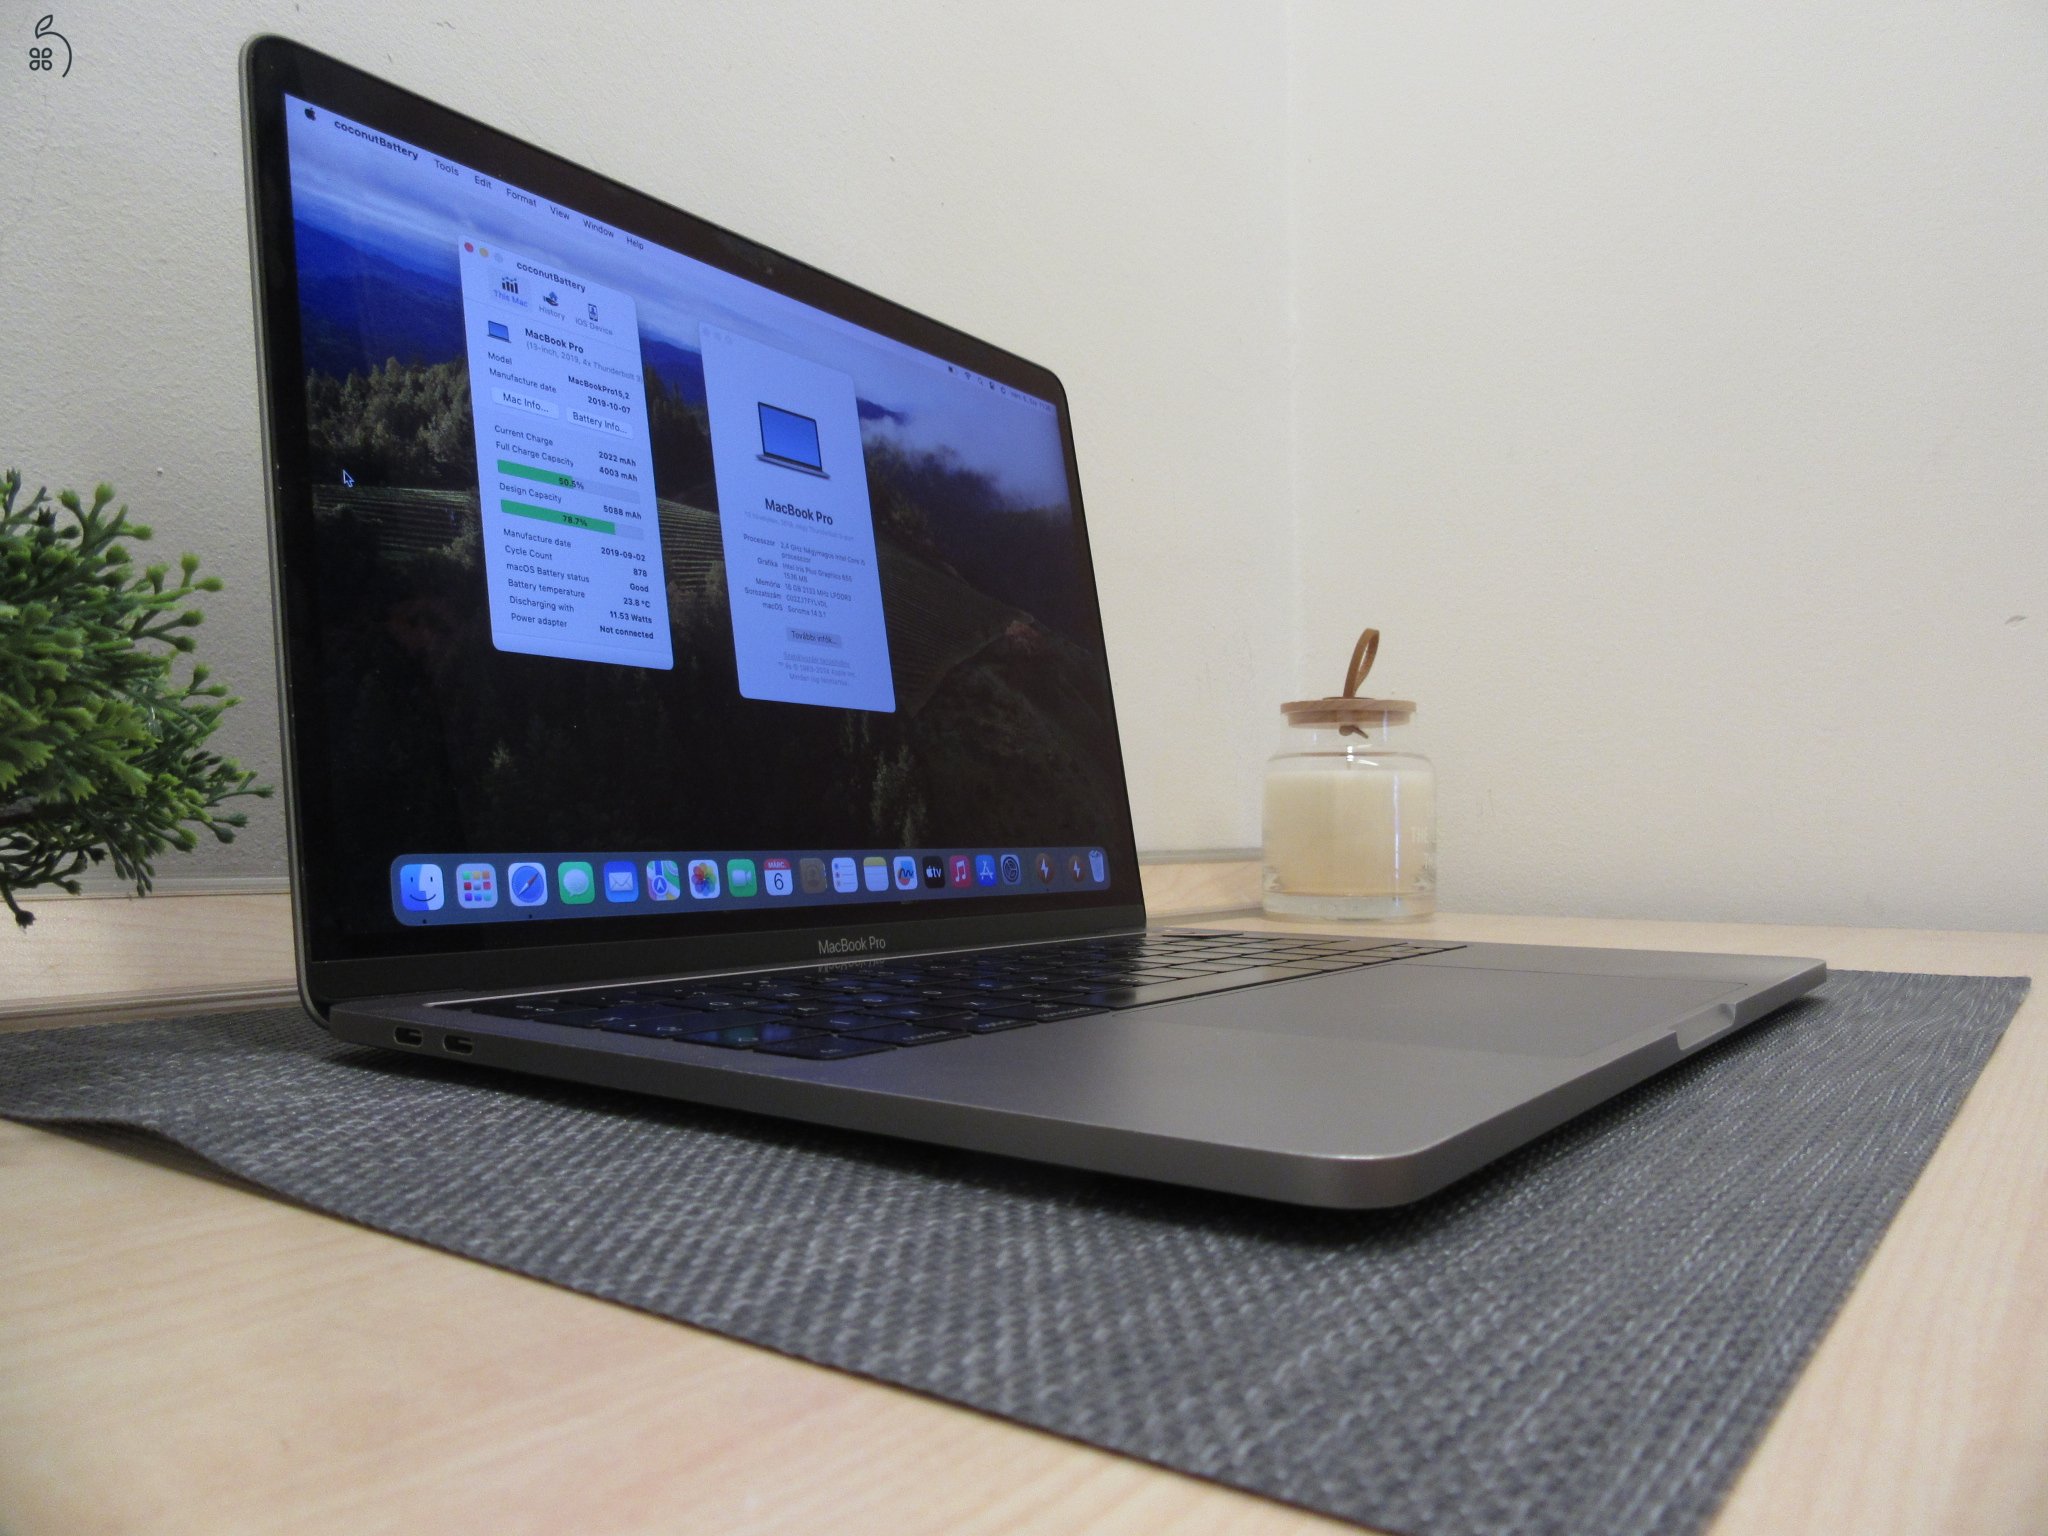  Apple Retina Macbook Pro 13 Touchbar - 2019 - Használt, megkímélt 